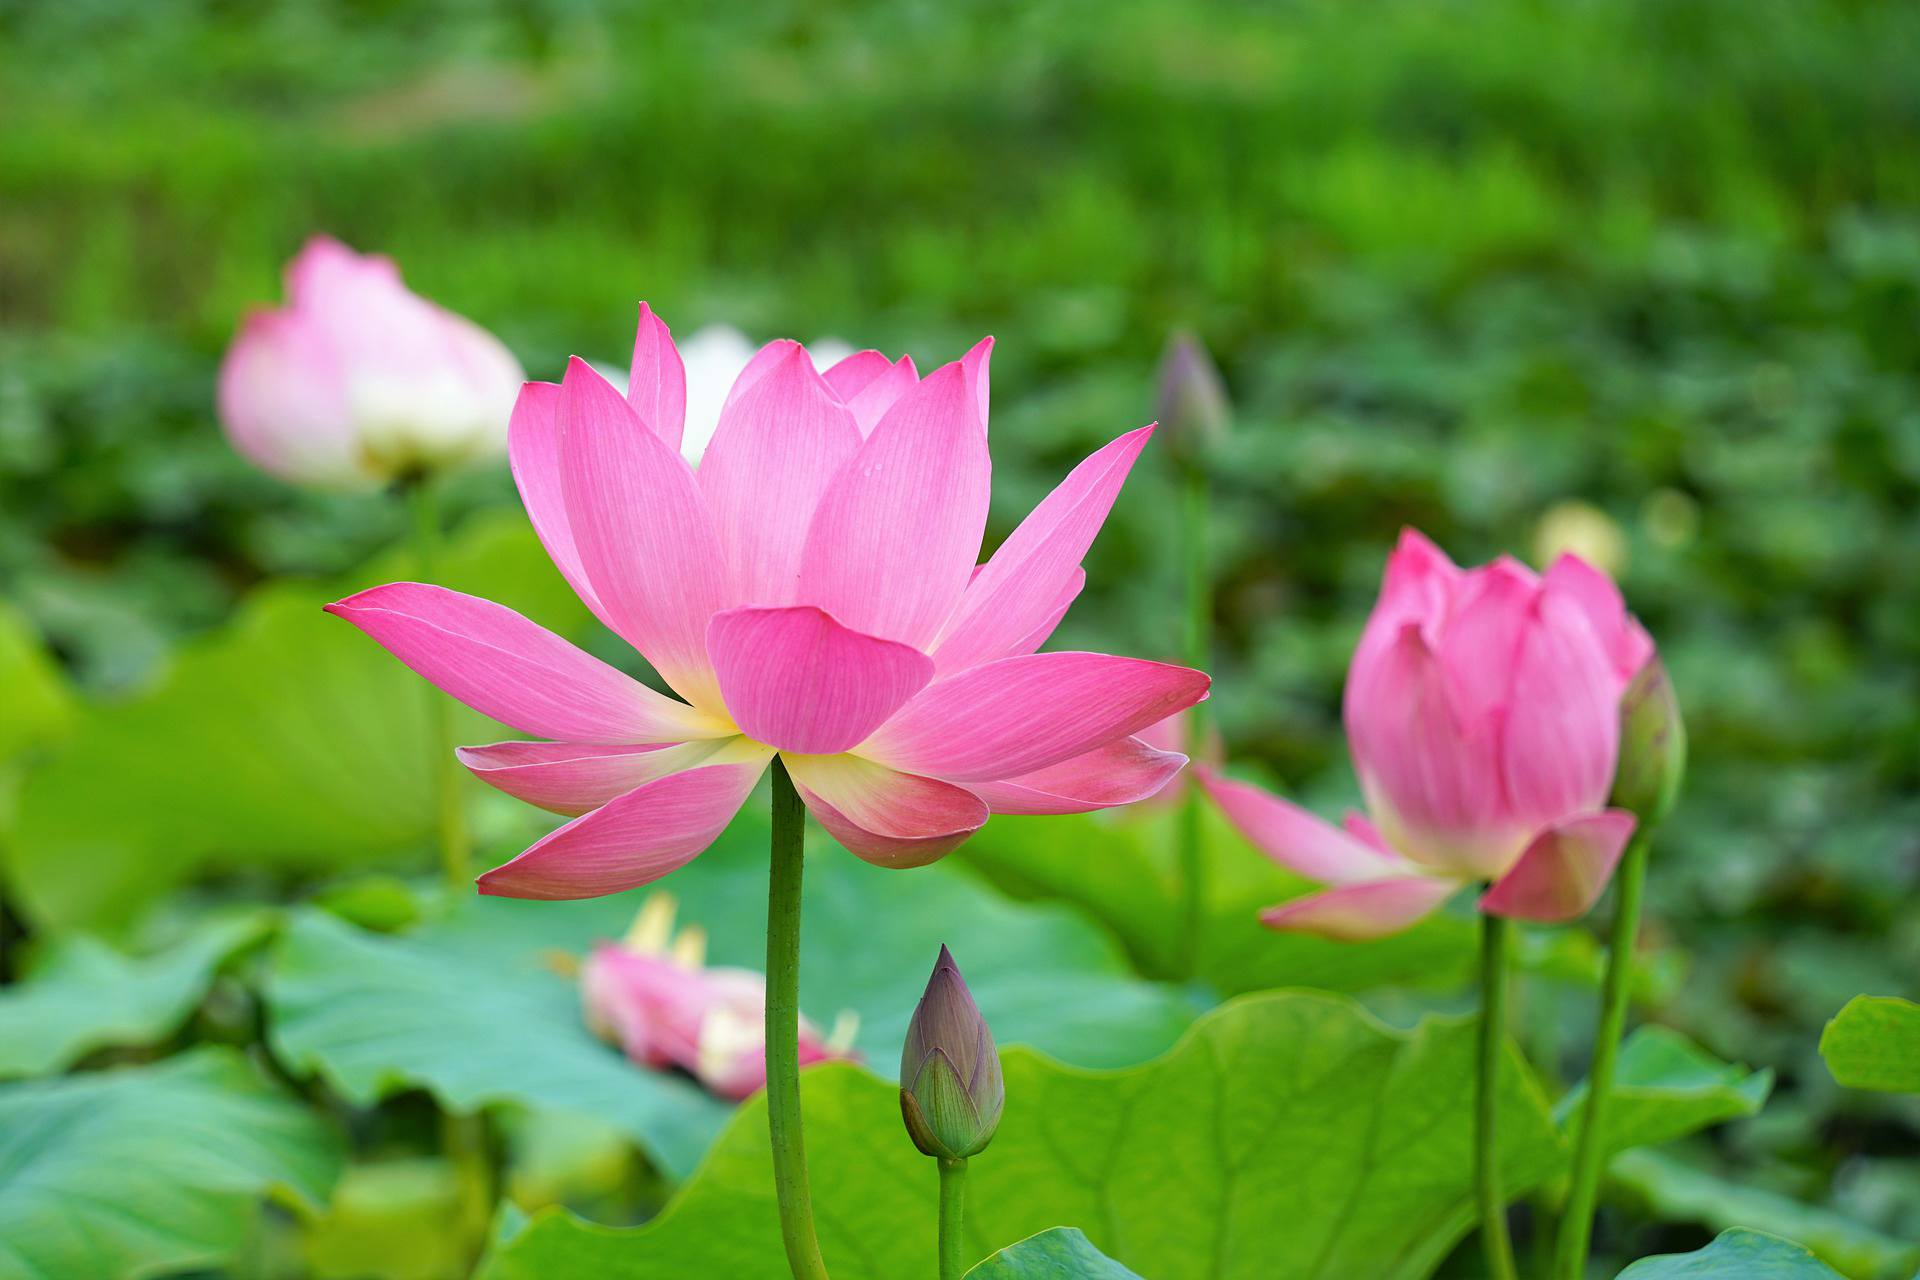 Hoa sen đẹp là biểu tượng của sự thanh tịnh và tinh khiết trong văn hóa Việt Nam. Họa tiết hoa sen xuất hiện khắp nơi, từ kiến trúc đình làng đến các tác phẩm nghệ thuật. Hãy đắm mình trong vẻ đẹp tuyệt vời của hoa sen và tìm hiểu thêm về ý nghĩa của chúng.